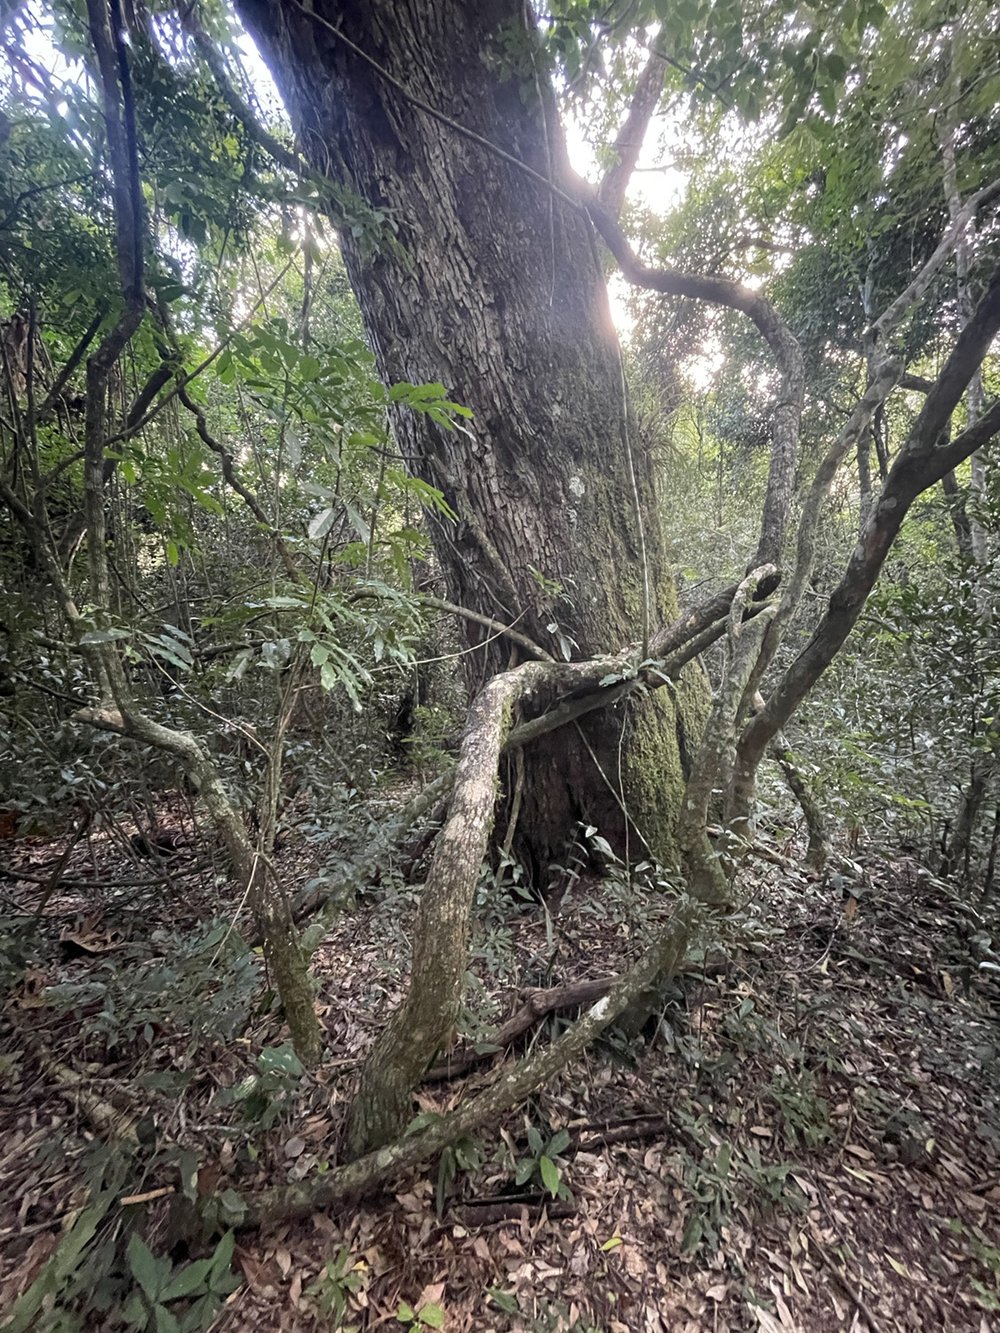  Les lianes et racines sont impressionnantes ! 